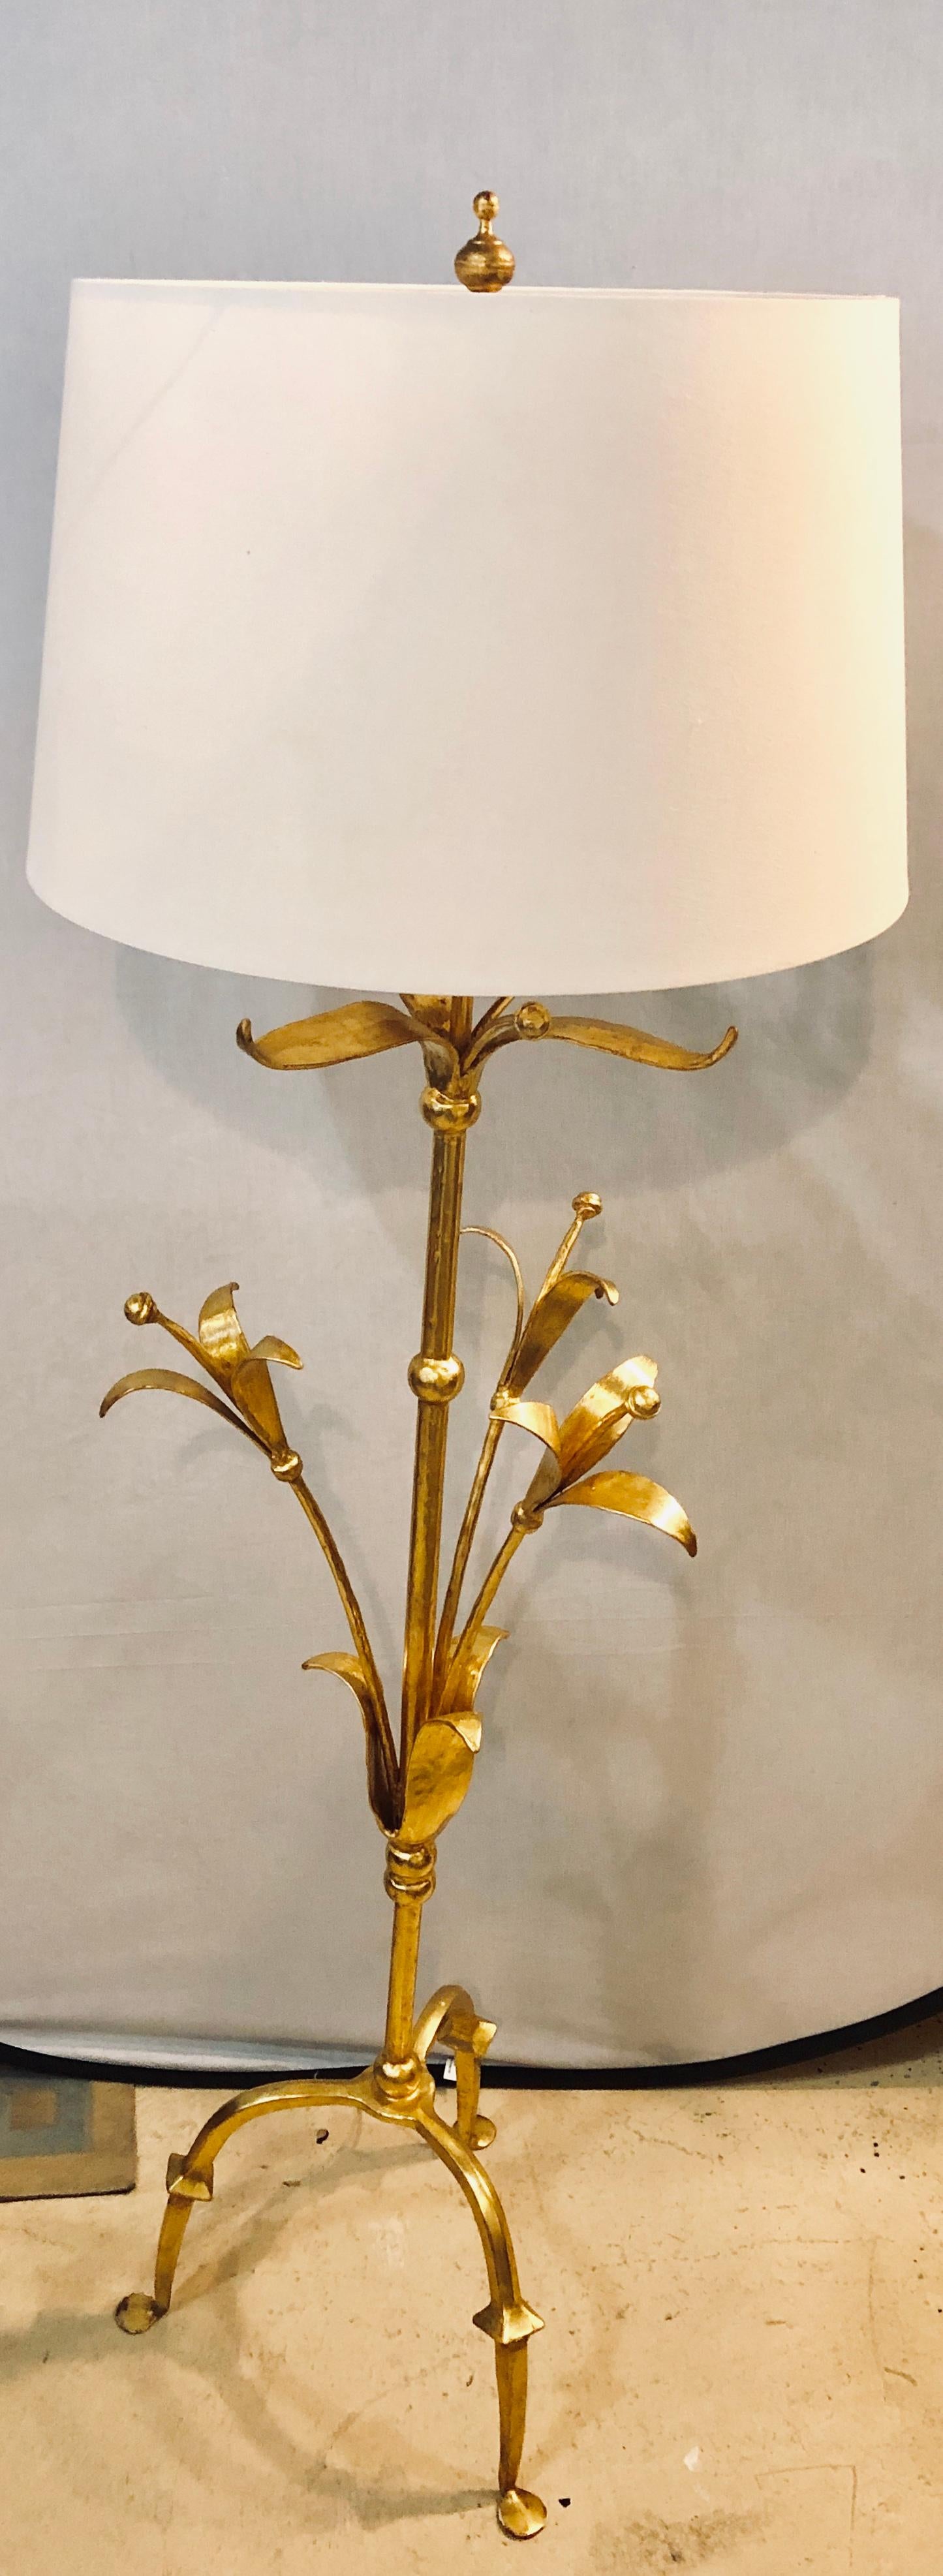 Lampadaire en bronze conçu et produit en France par un designer inconnu. Dans le style de Mark Bankowsky.

Lampe sur pied ou lampe haute en bronze massif, de forme tulipe, de style moderne du milieu du siècle dernier. Cette lampe sur pied ou haute